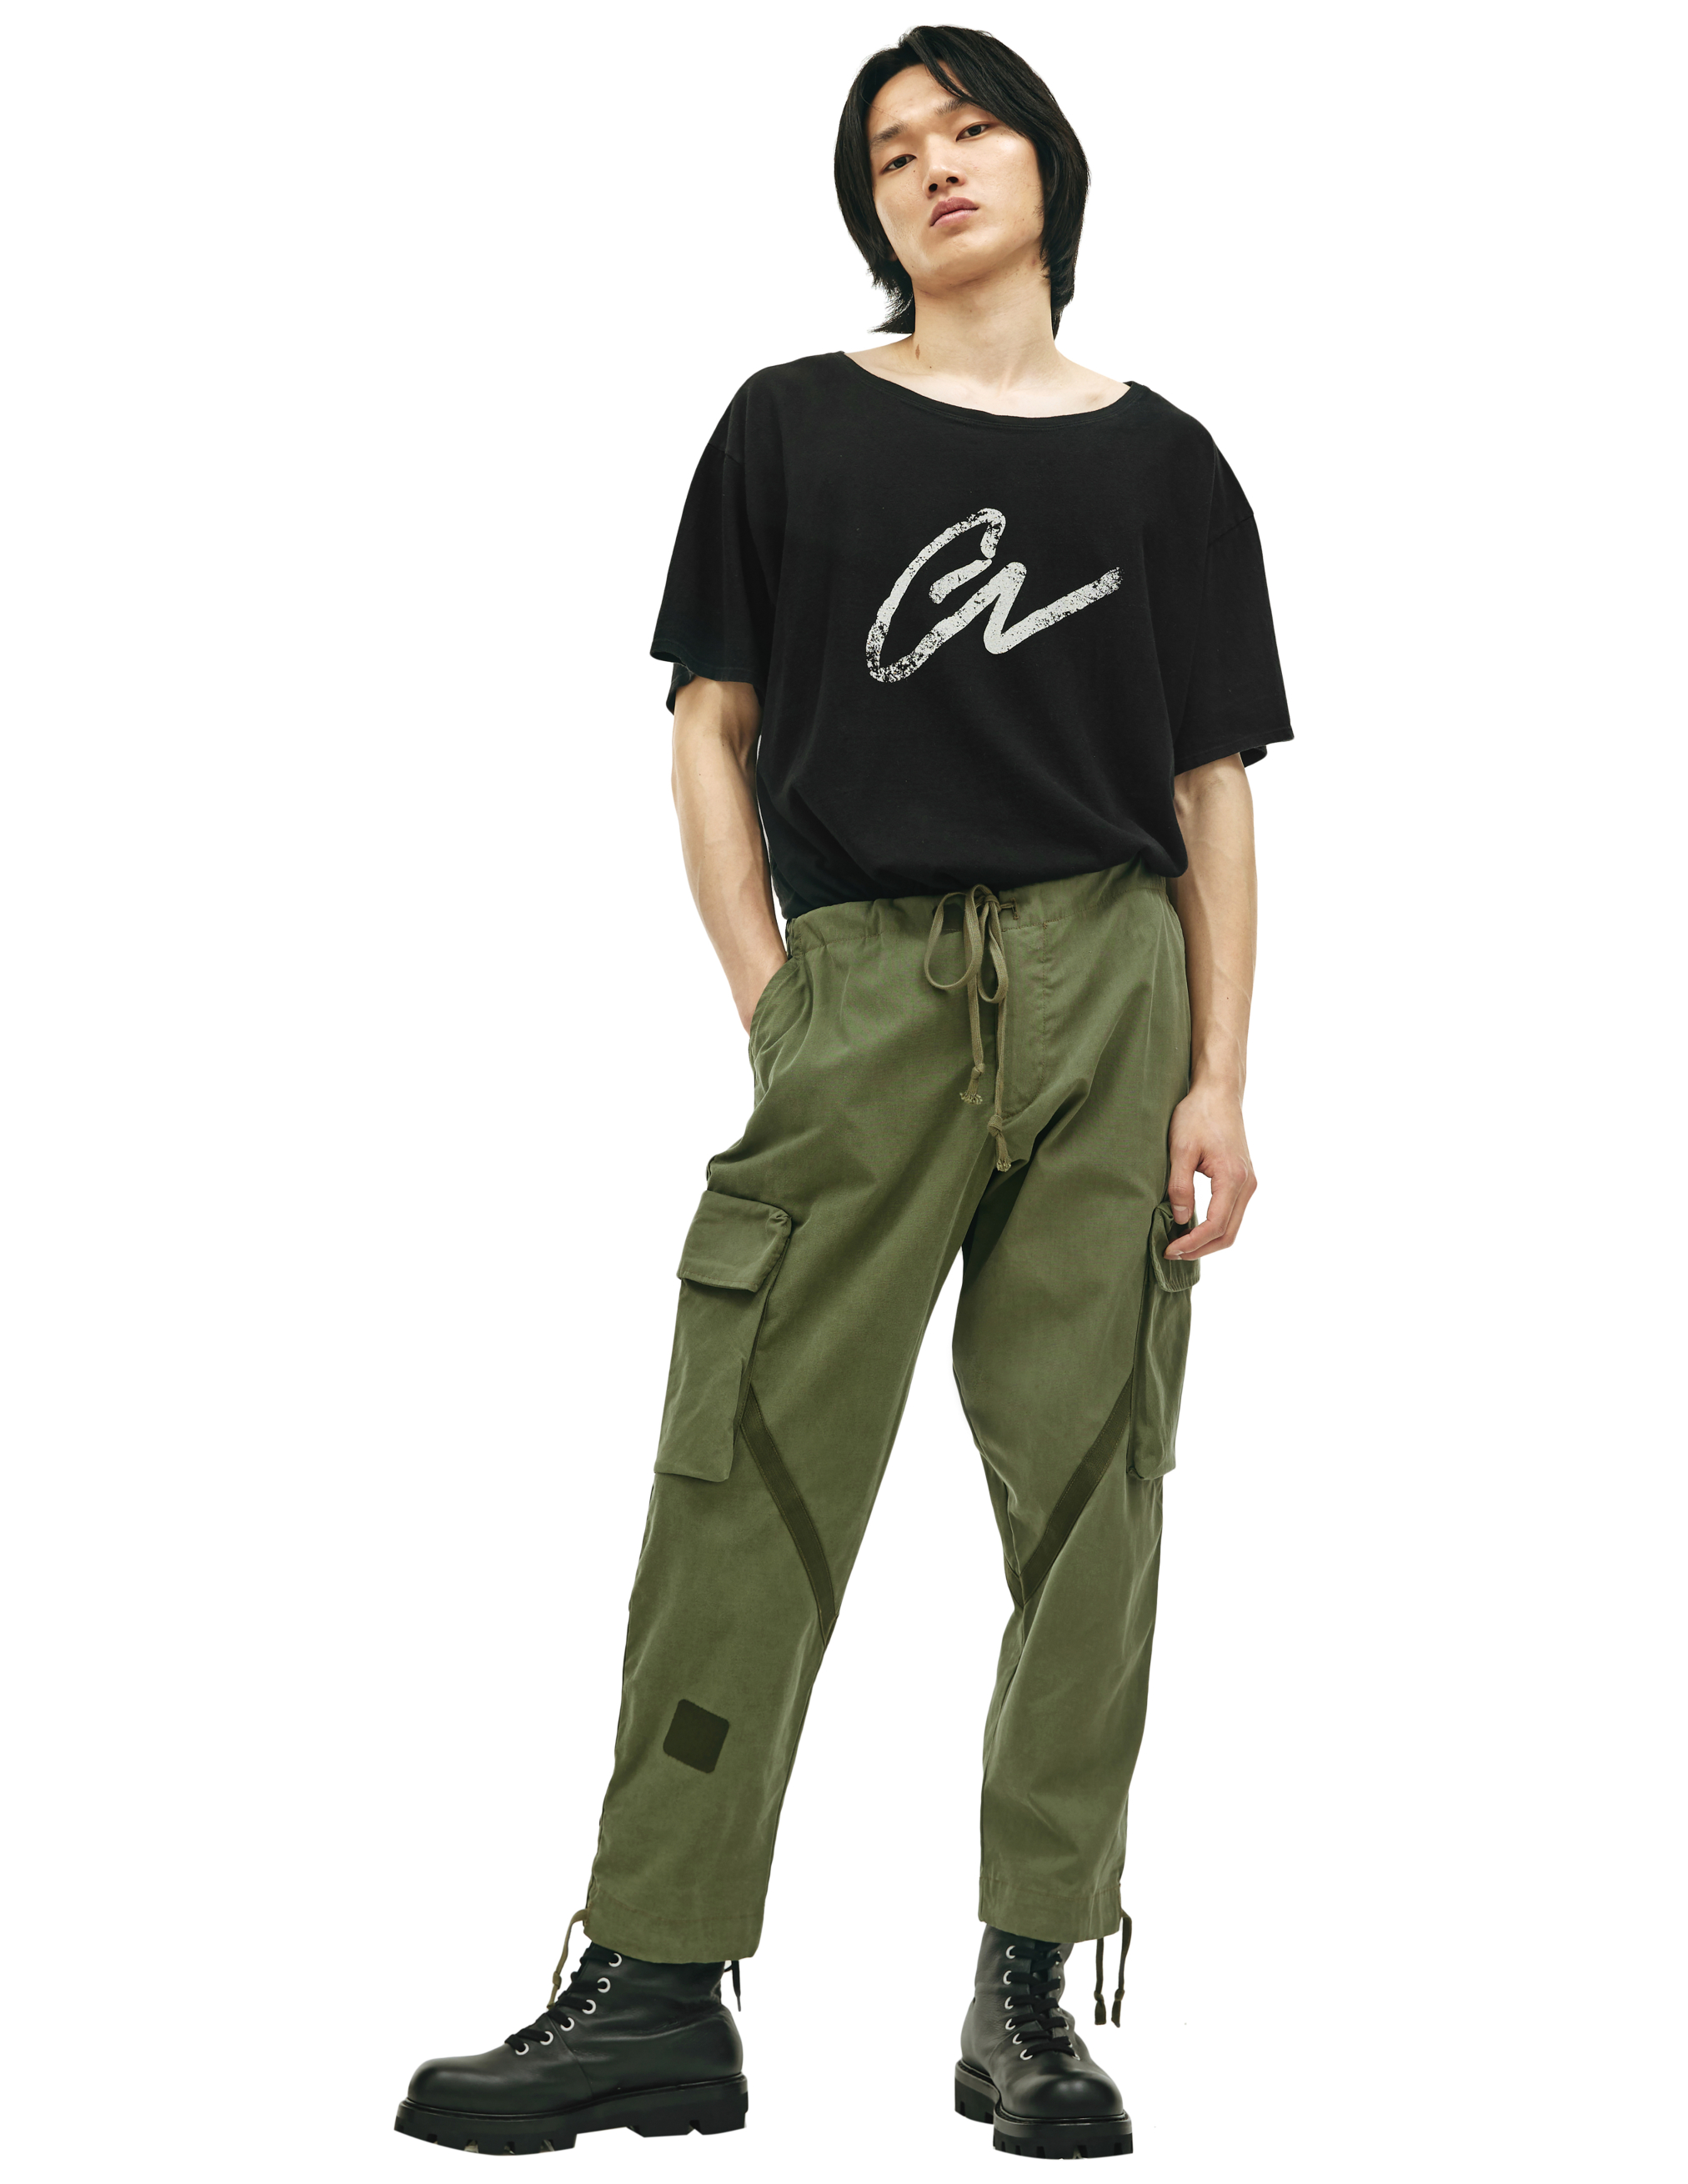 Зеленые брюки карго Greg Lauren EM227/ARMY, размер 5